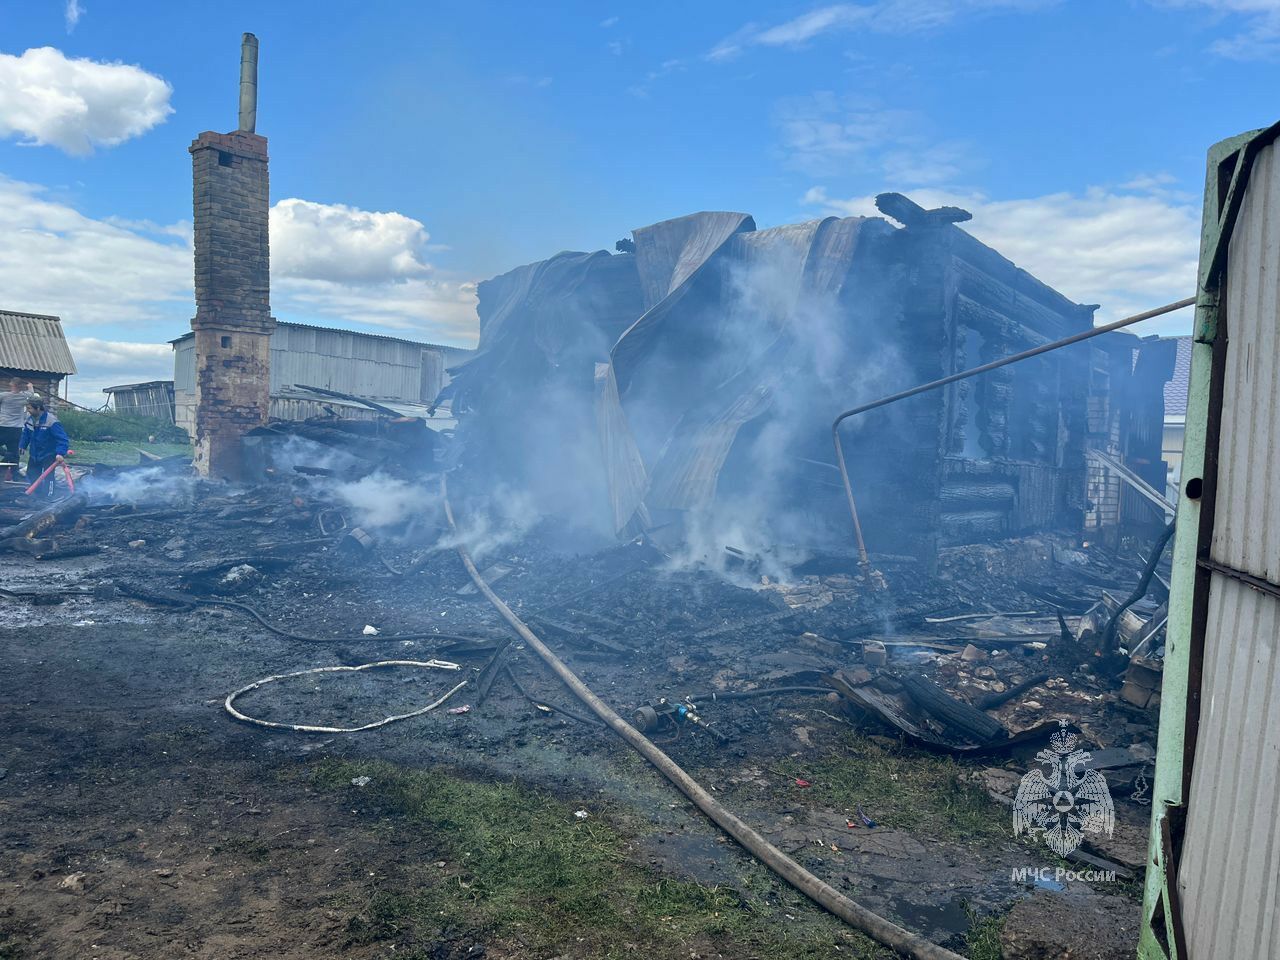 Три человека погибли на пожаре в Татарстане